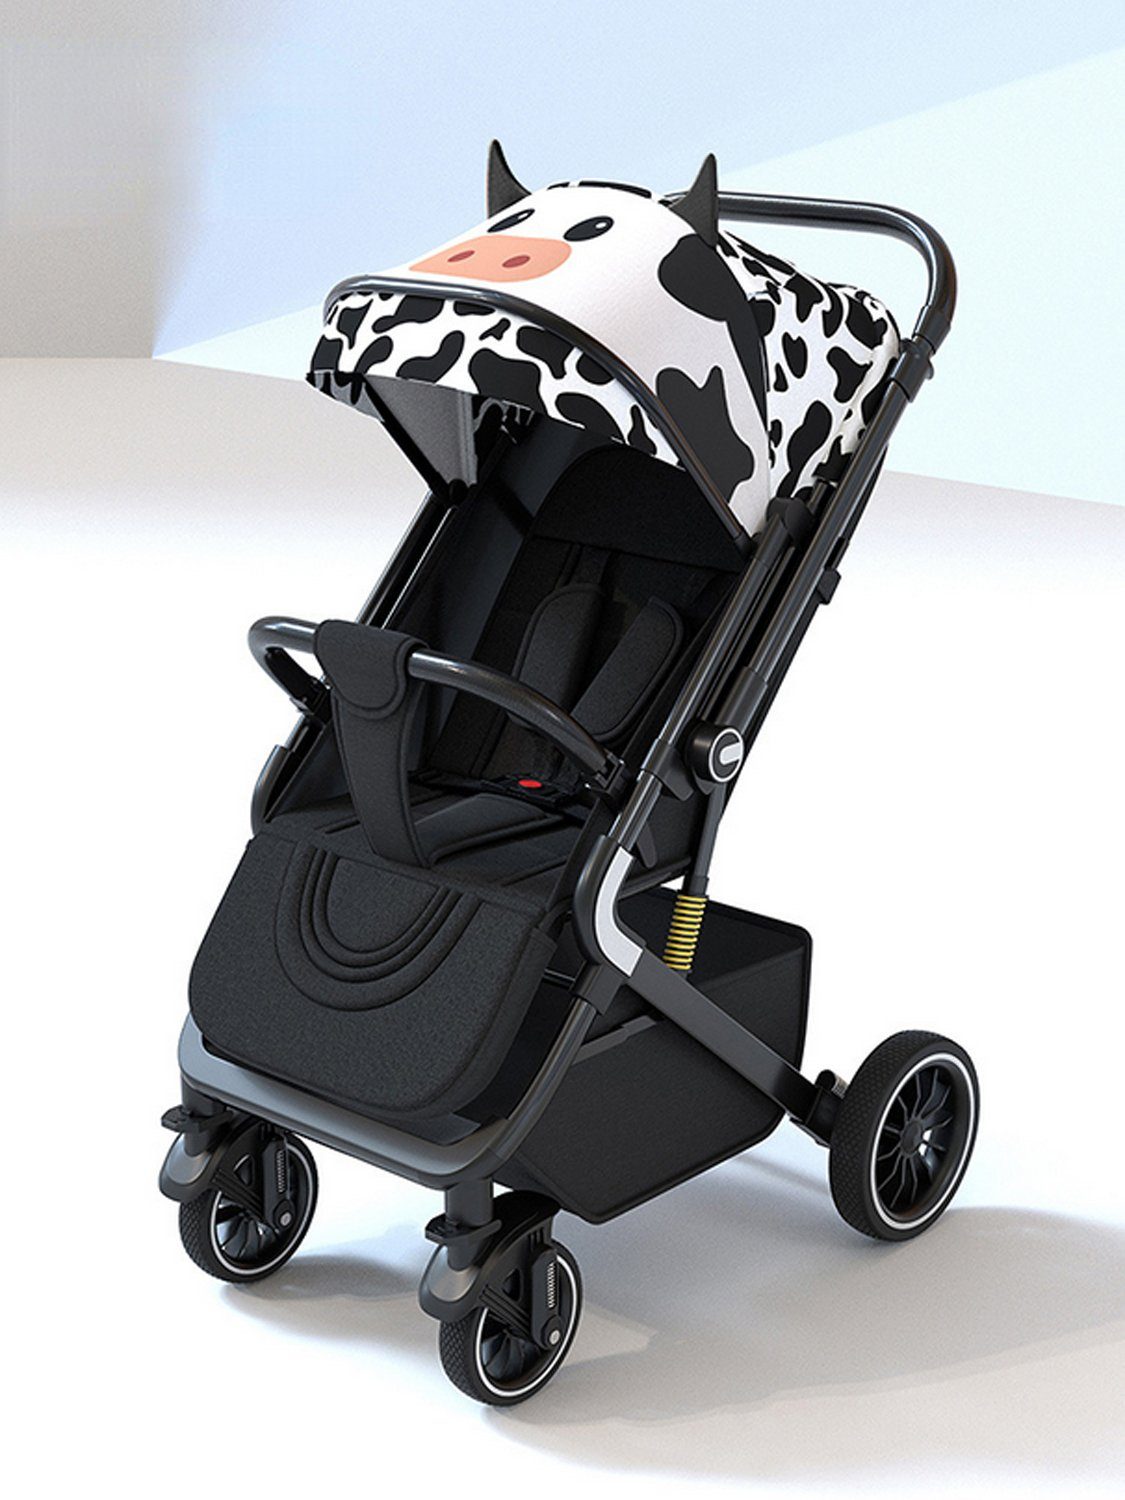 Babywanne Kinderwagen wendbare Babyschale, 5-Punkt-Sicherheitsgurt verstellbare Schwarz-Weiß TPFLiving Buggy Rückenlehne, Sonnenschutz, mit Kinder-Buggy